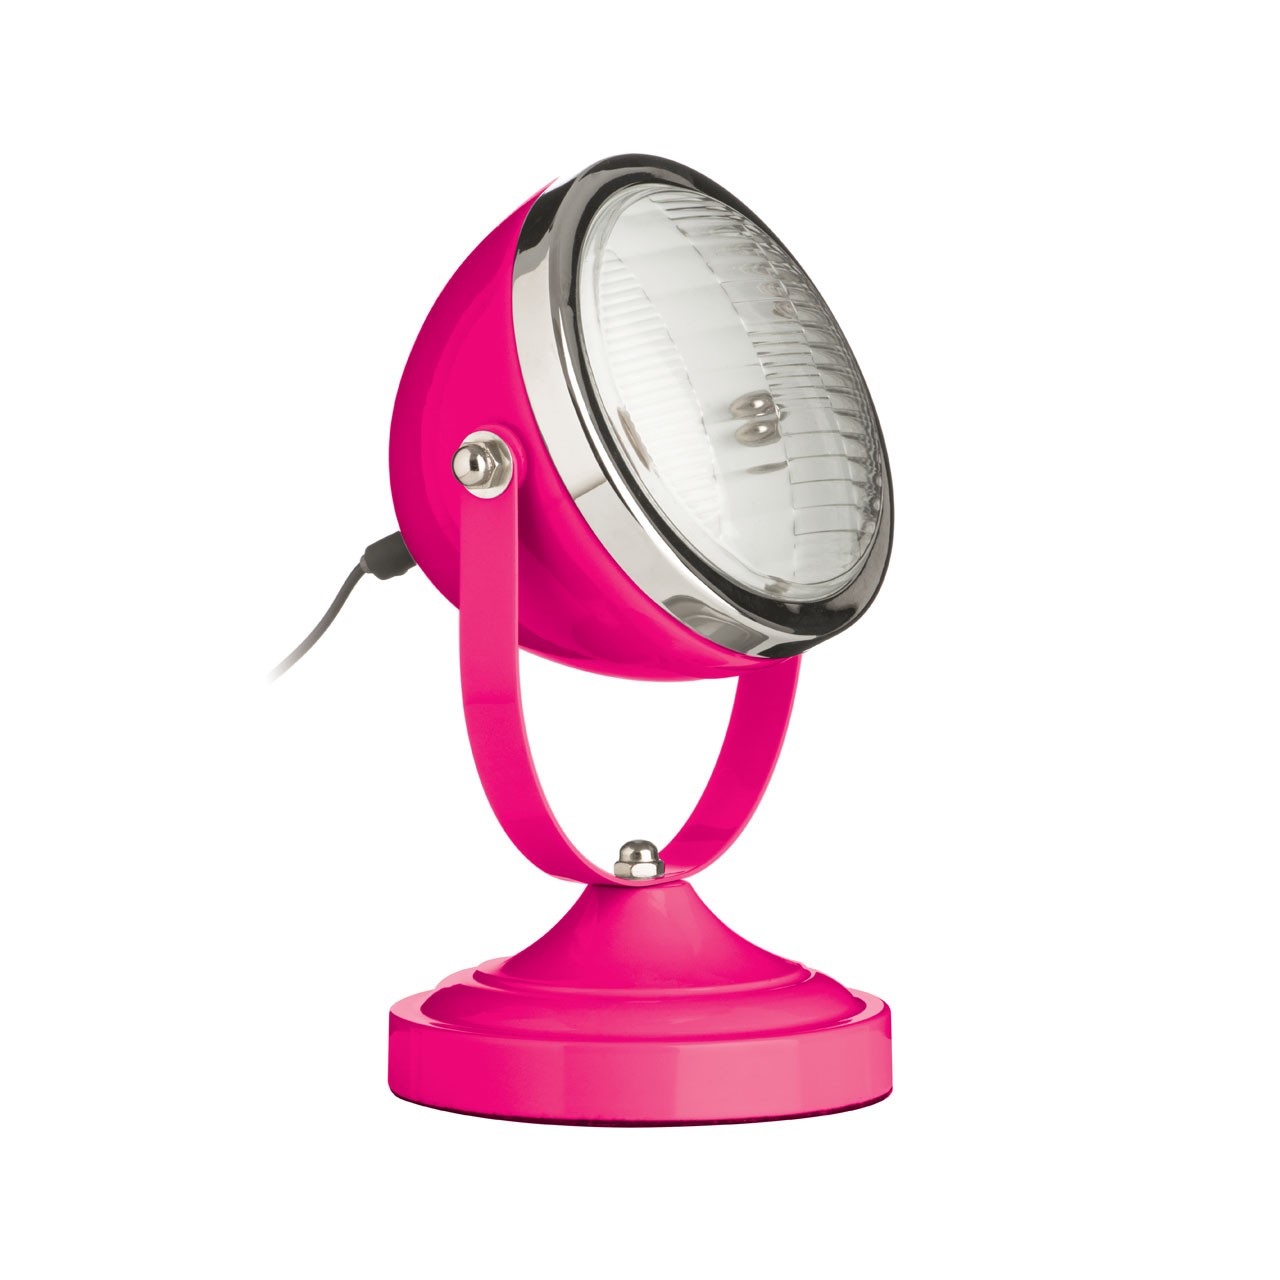 Prime Furnishing Chrome Spotlight Table Lamp - Hot Pink